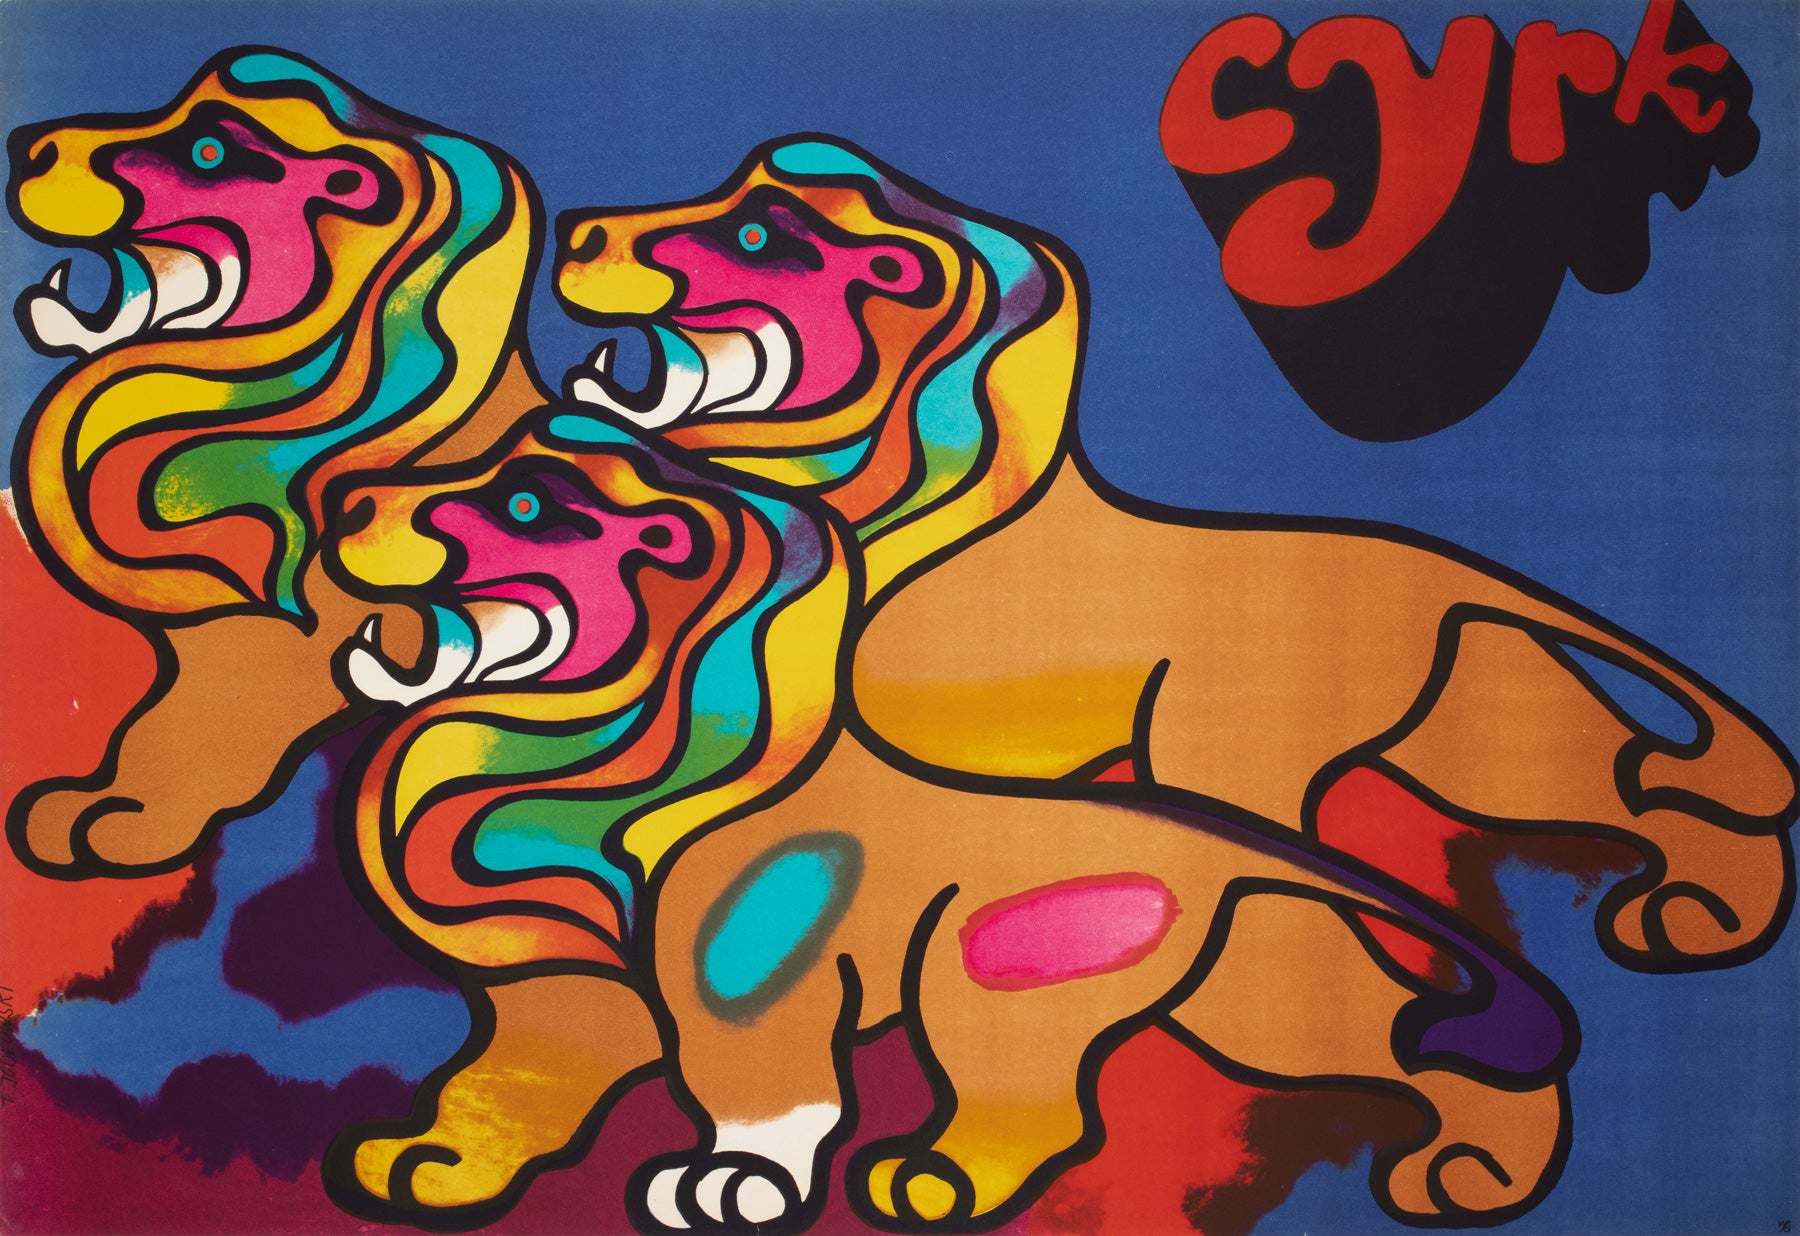 Cyrk Polish Circus Poster 3 Lions 1970, Jodlowski